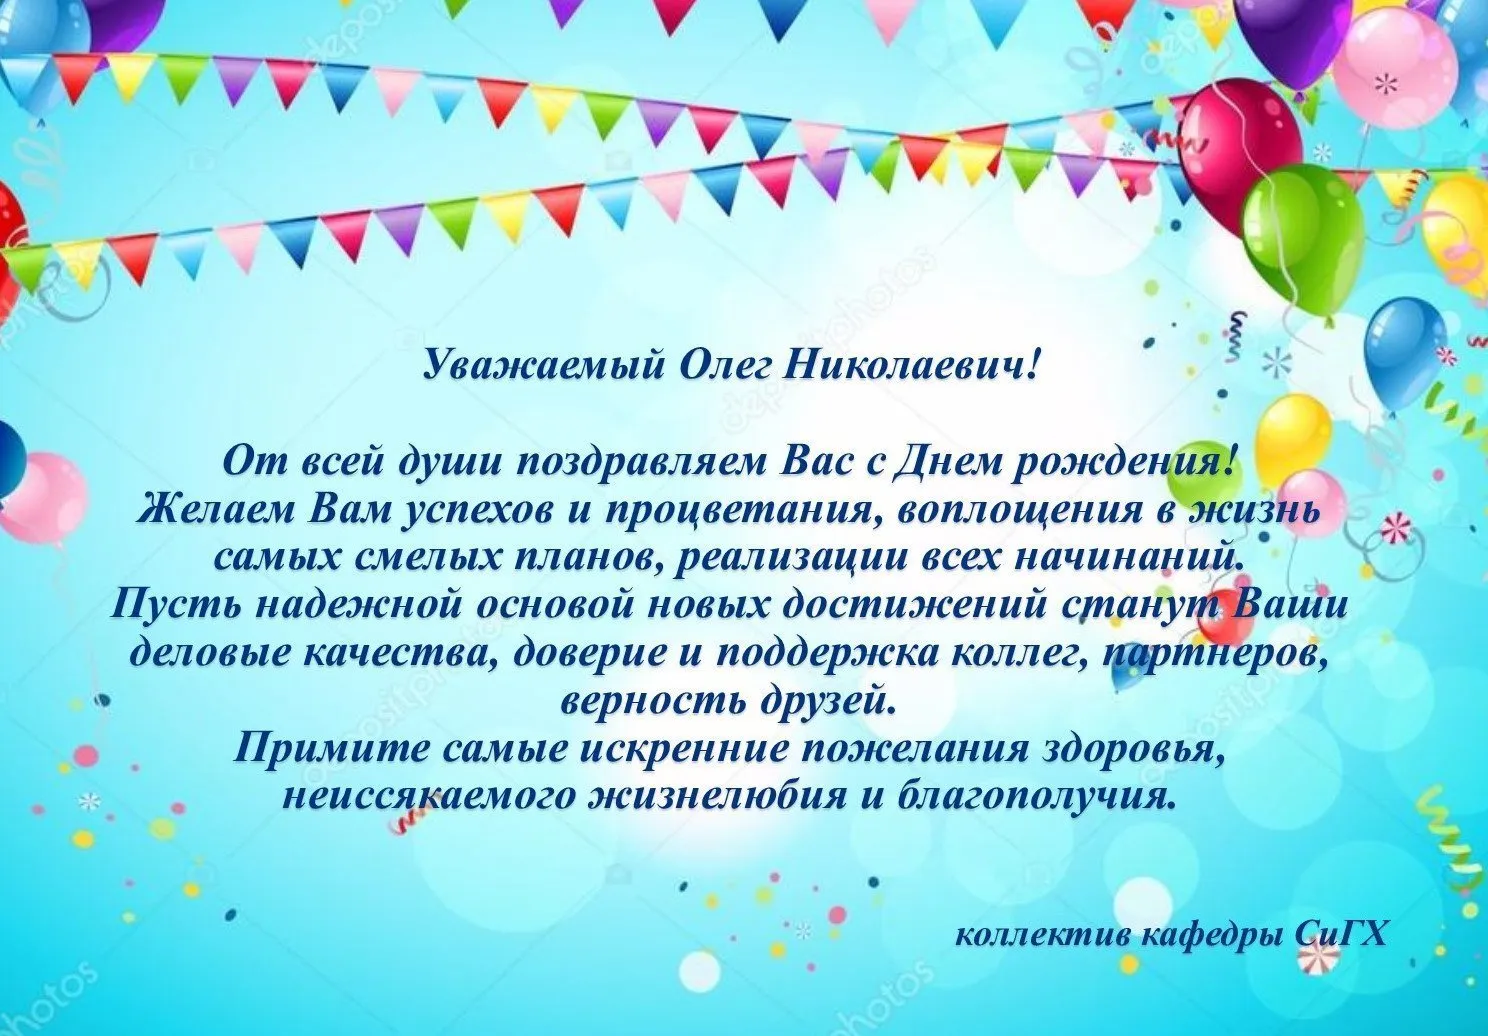 С Днем Рождения, Олег | Поздравления | Пожелания - YouTube